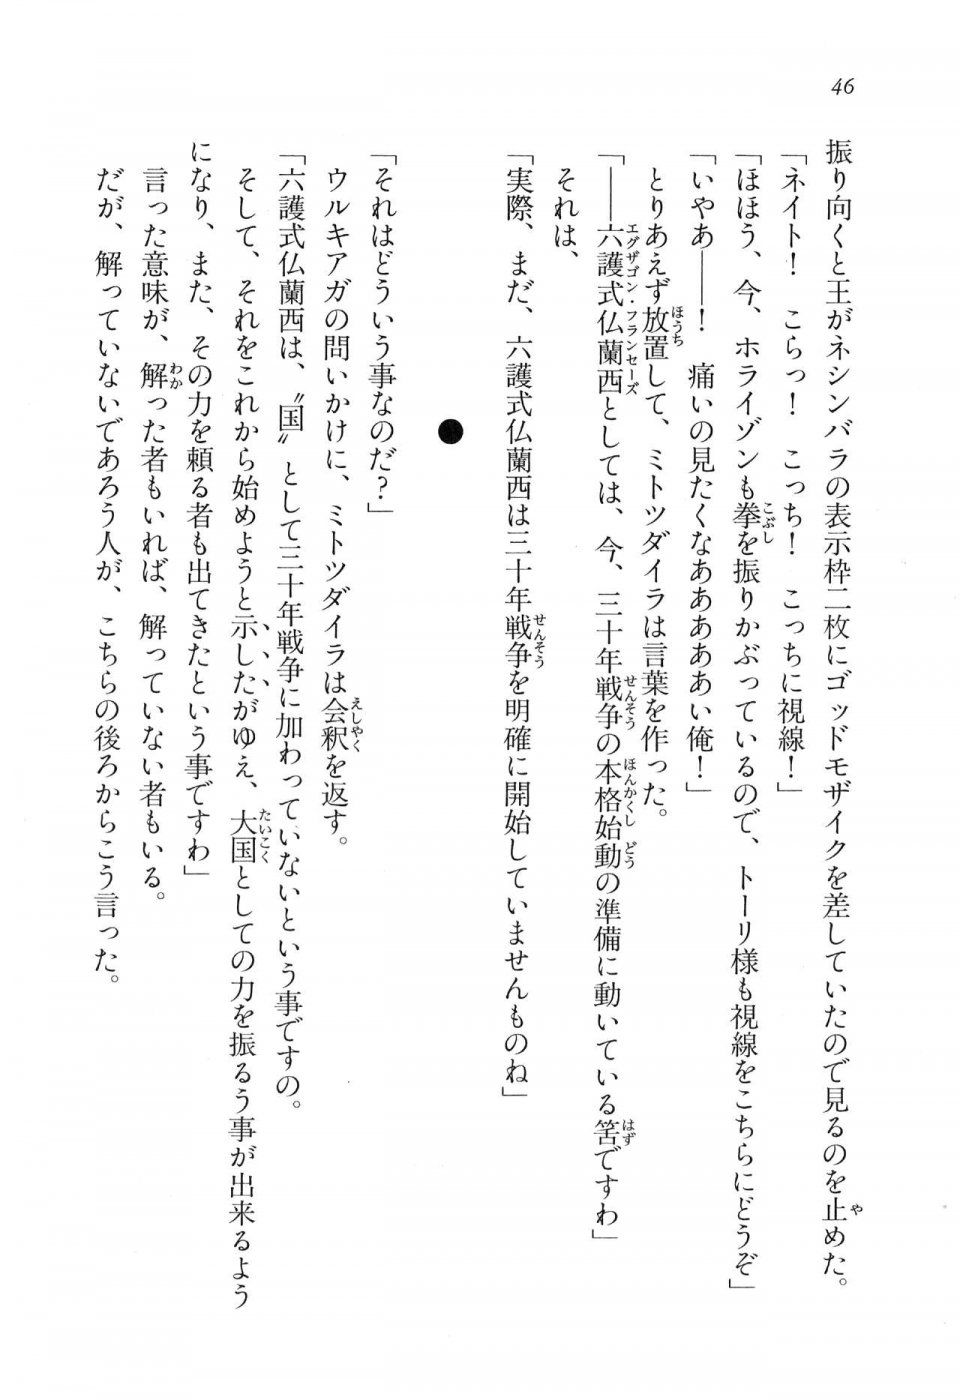 Kyoukai Senjou no Horizon LN Vol 16(7A) - Photo #46